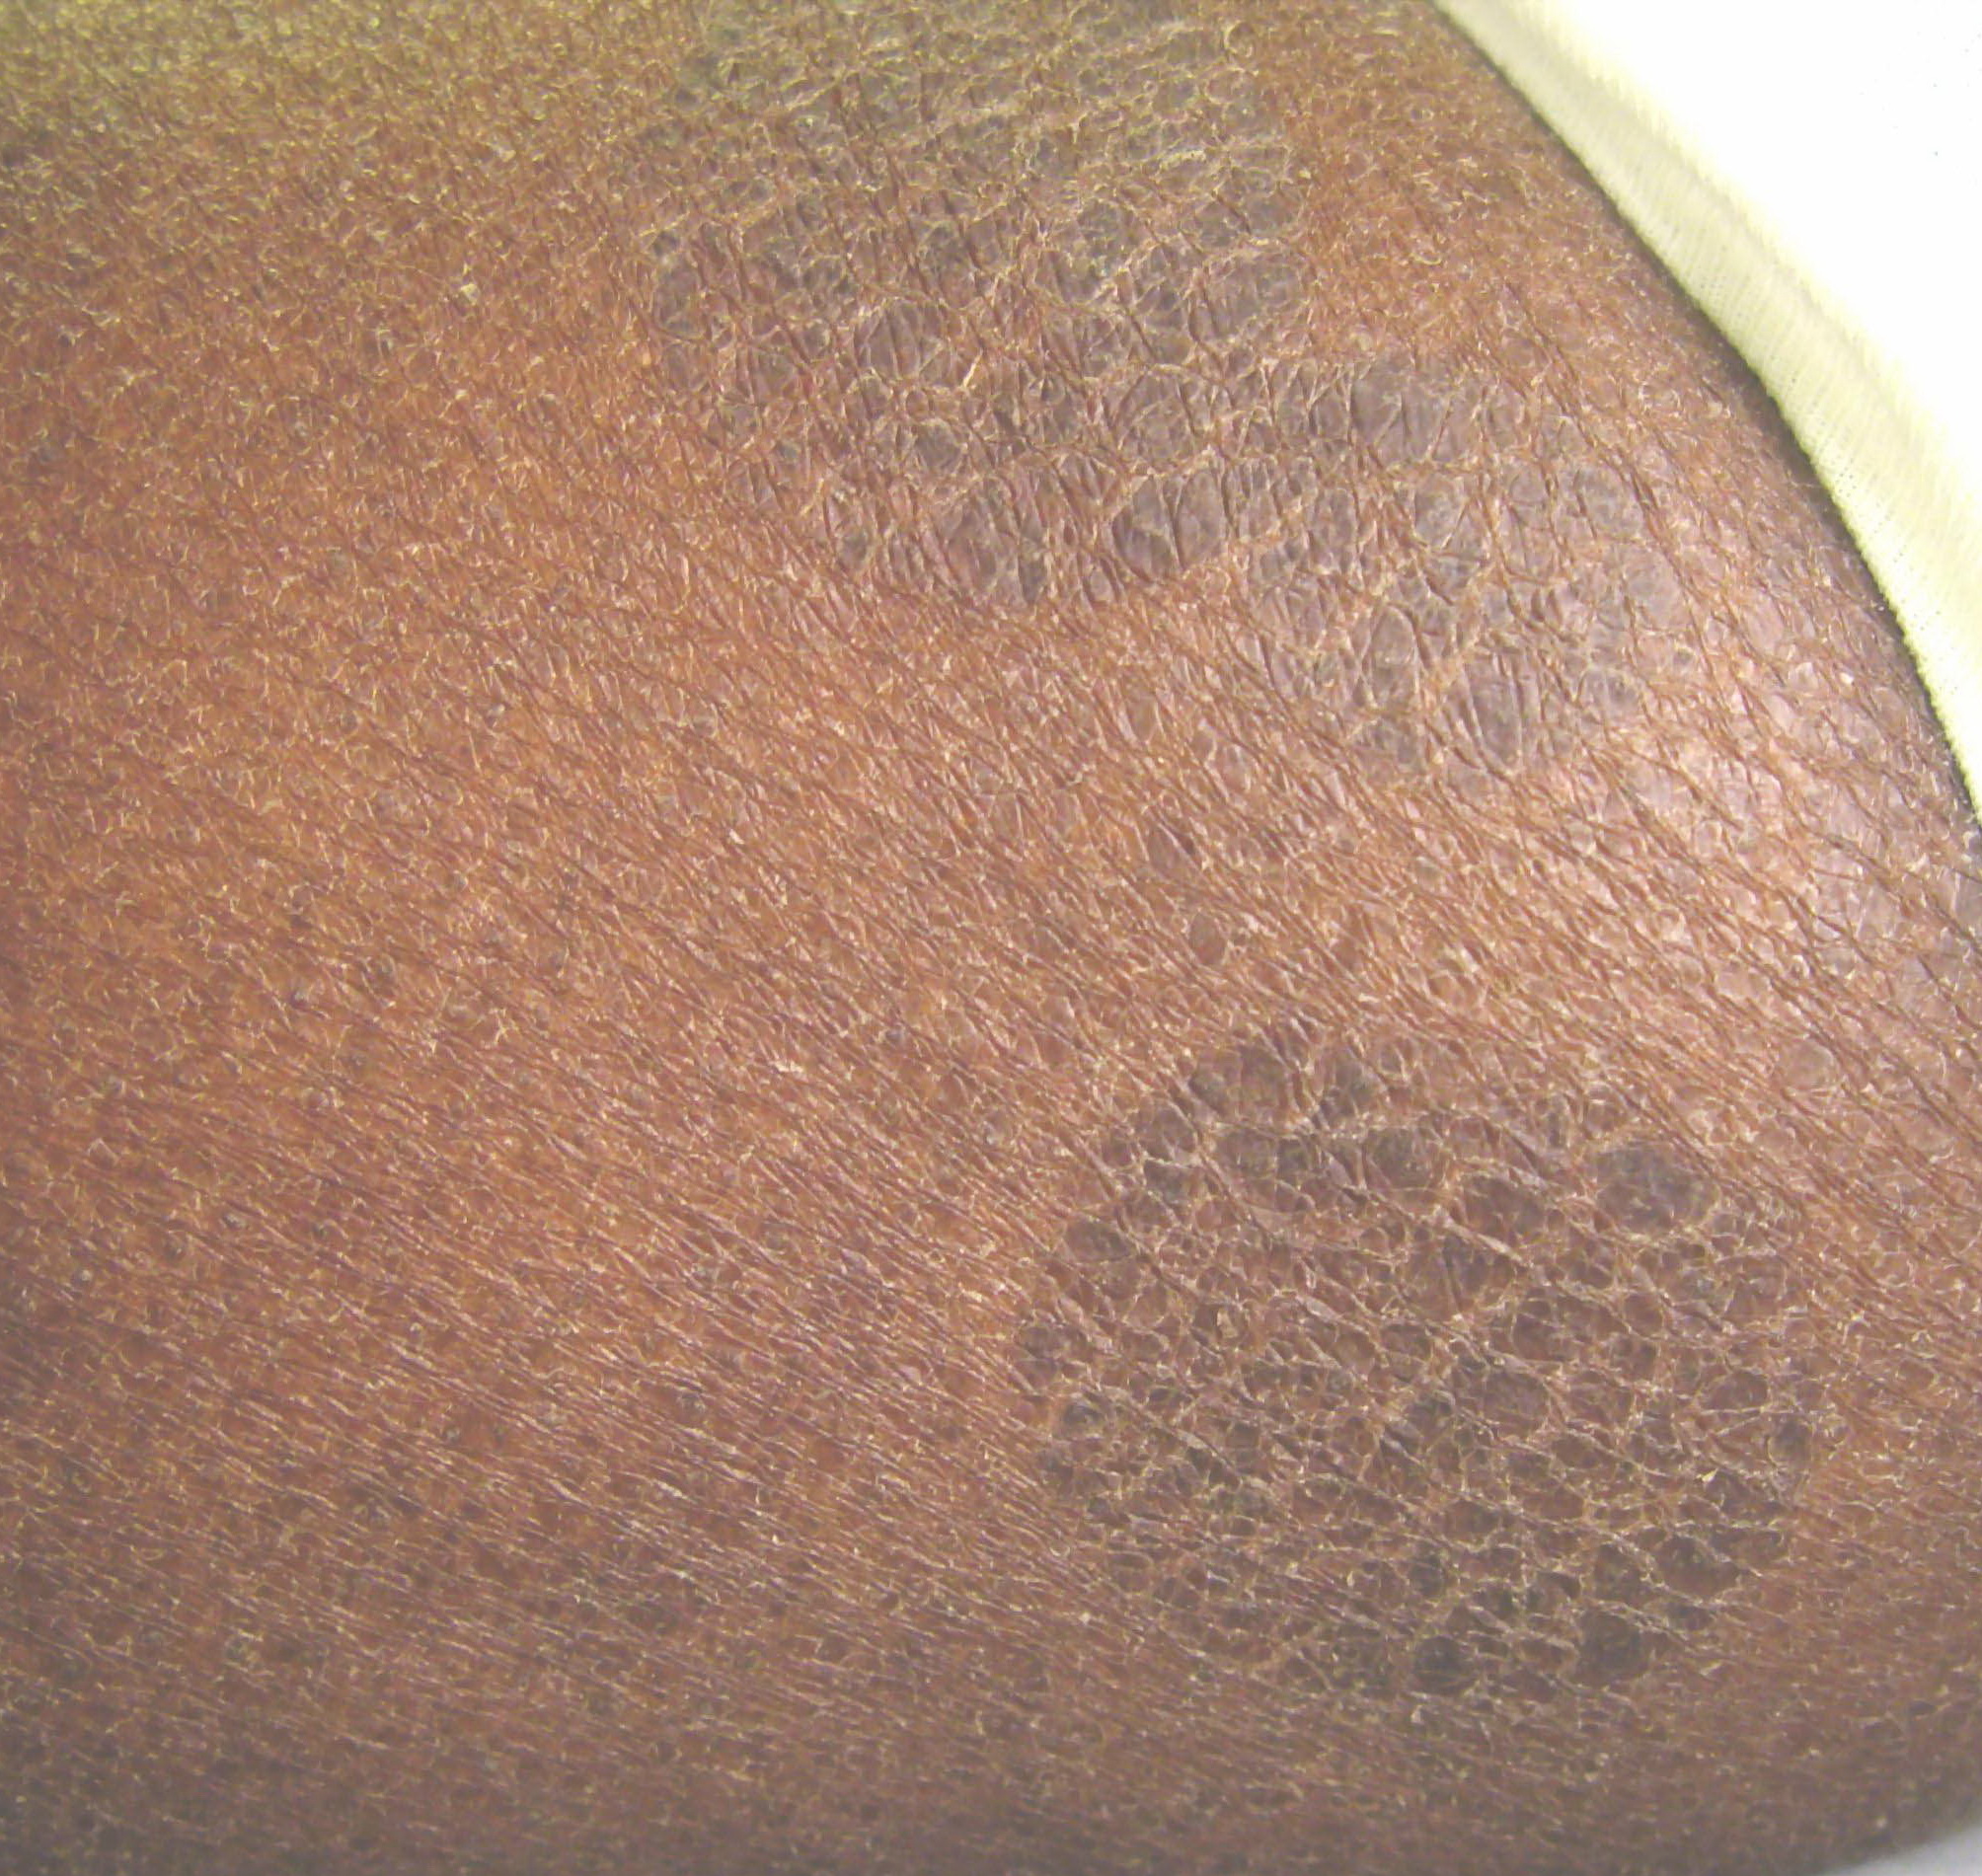 Ziekte van Gibert, pityriasis rosea, huiduitslag